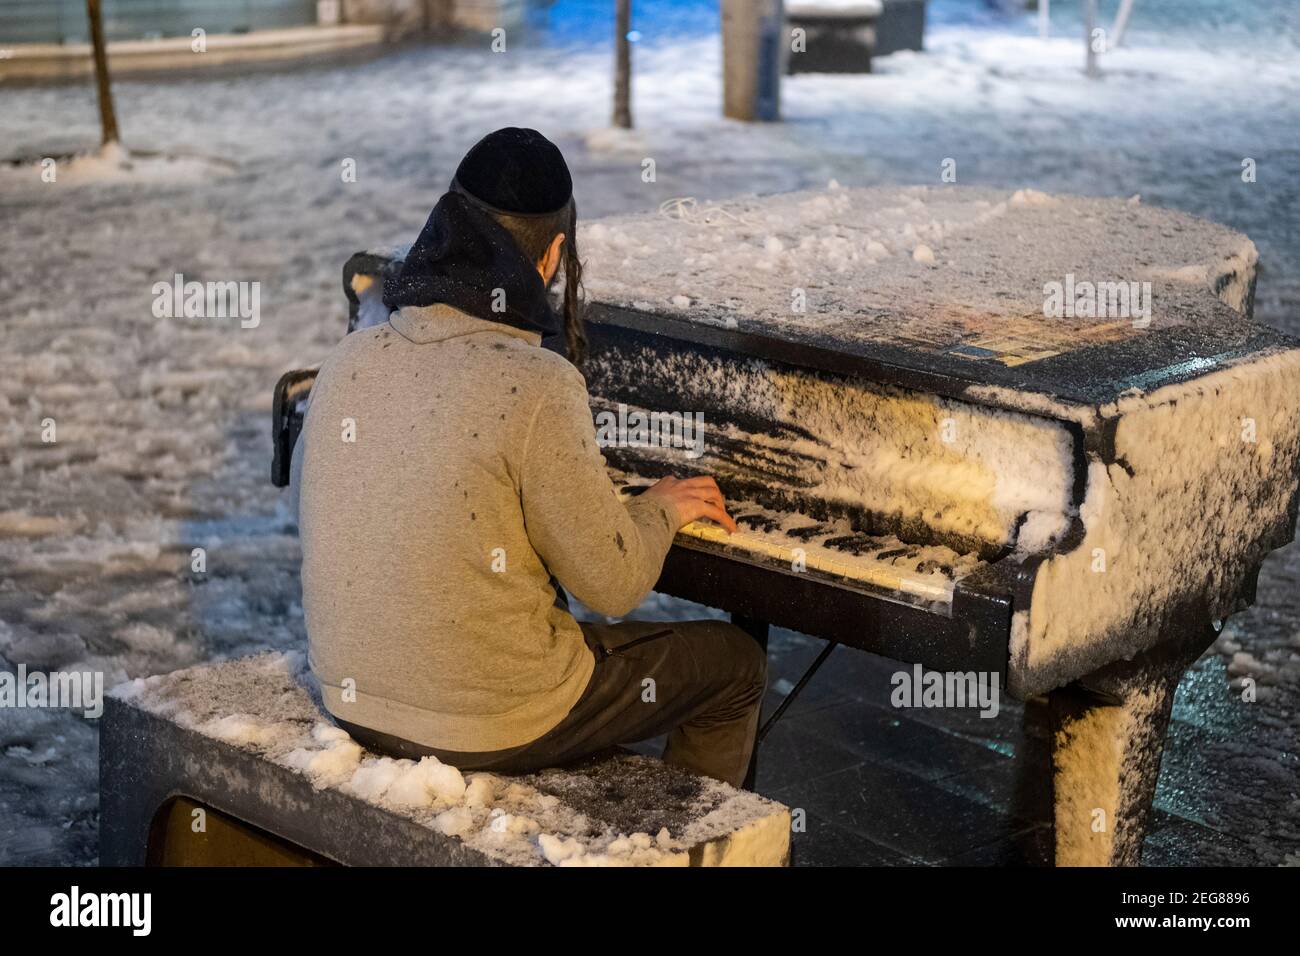 JERUSALEM, ISRAEL - FEBRUAR 17: Ein junger orthodoxer jüdischer Mann spielt am Zion-Platz Klavier, während Schneefall am 17. Februar 2020 in Jerusalem, Israel. Jerusalem bedeckt durch ersten Schnee in sechs Jahren erreicht sieben bis 10 Zentimeter (drei bis vier Zoll) über Nacht. Stockfoto